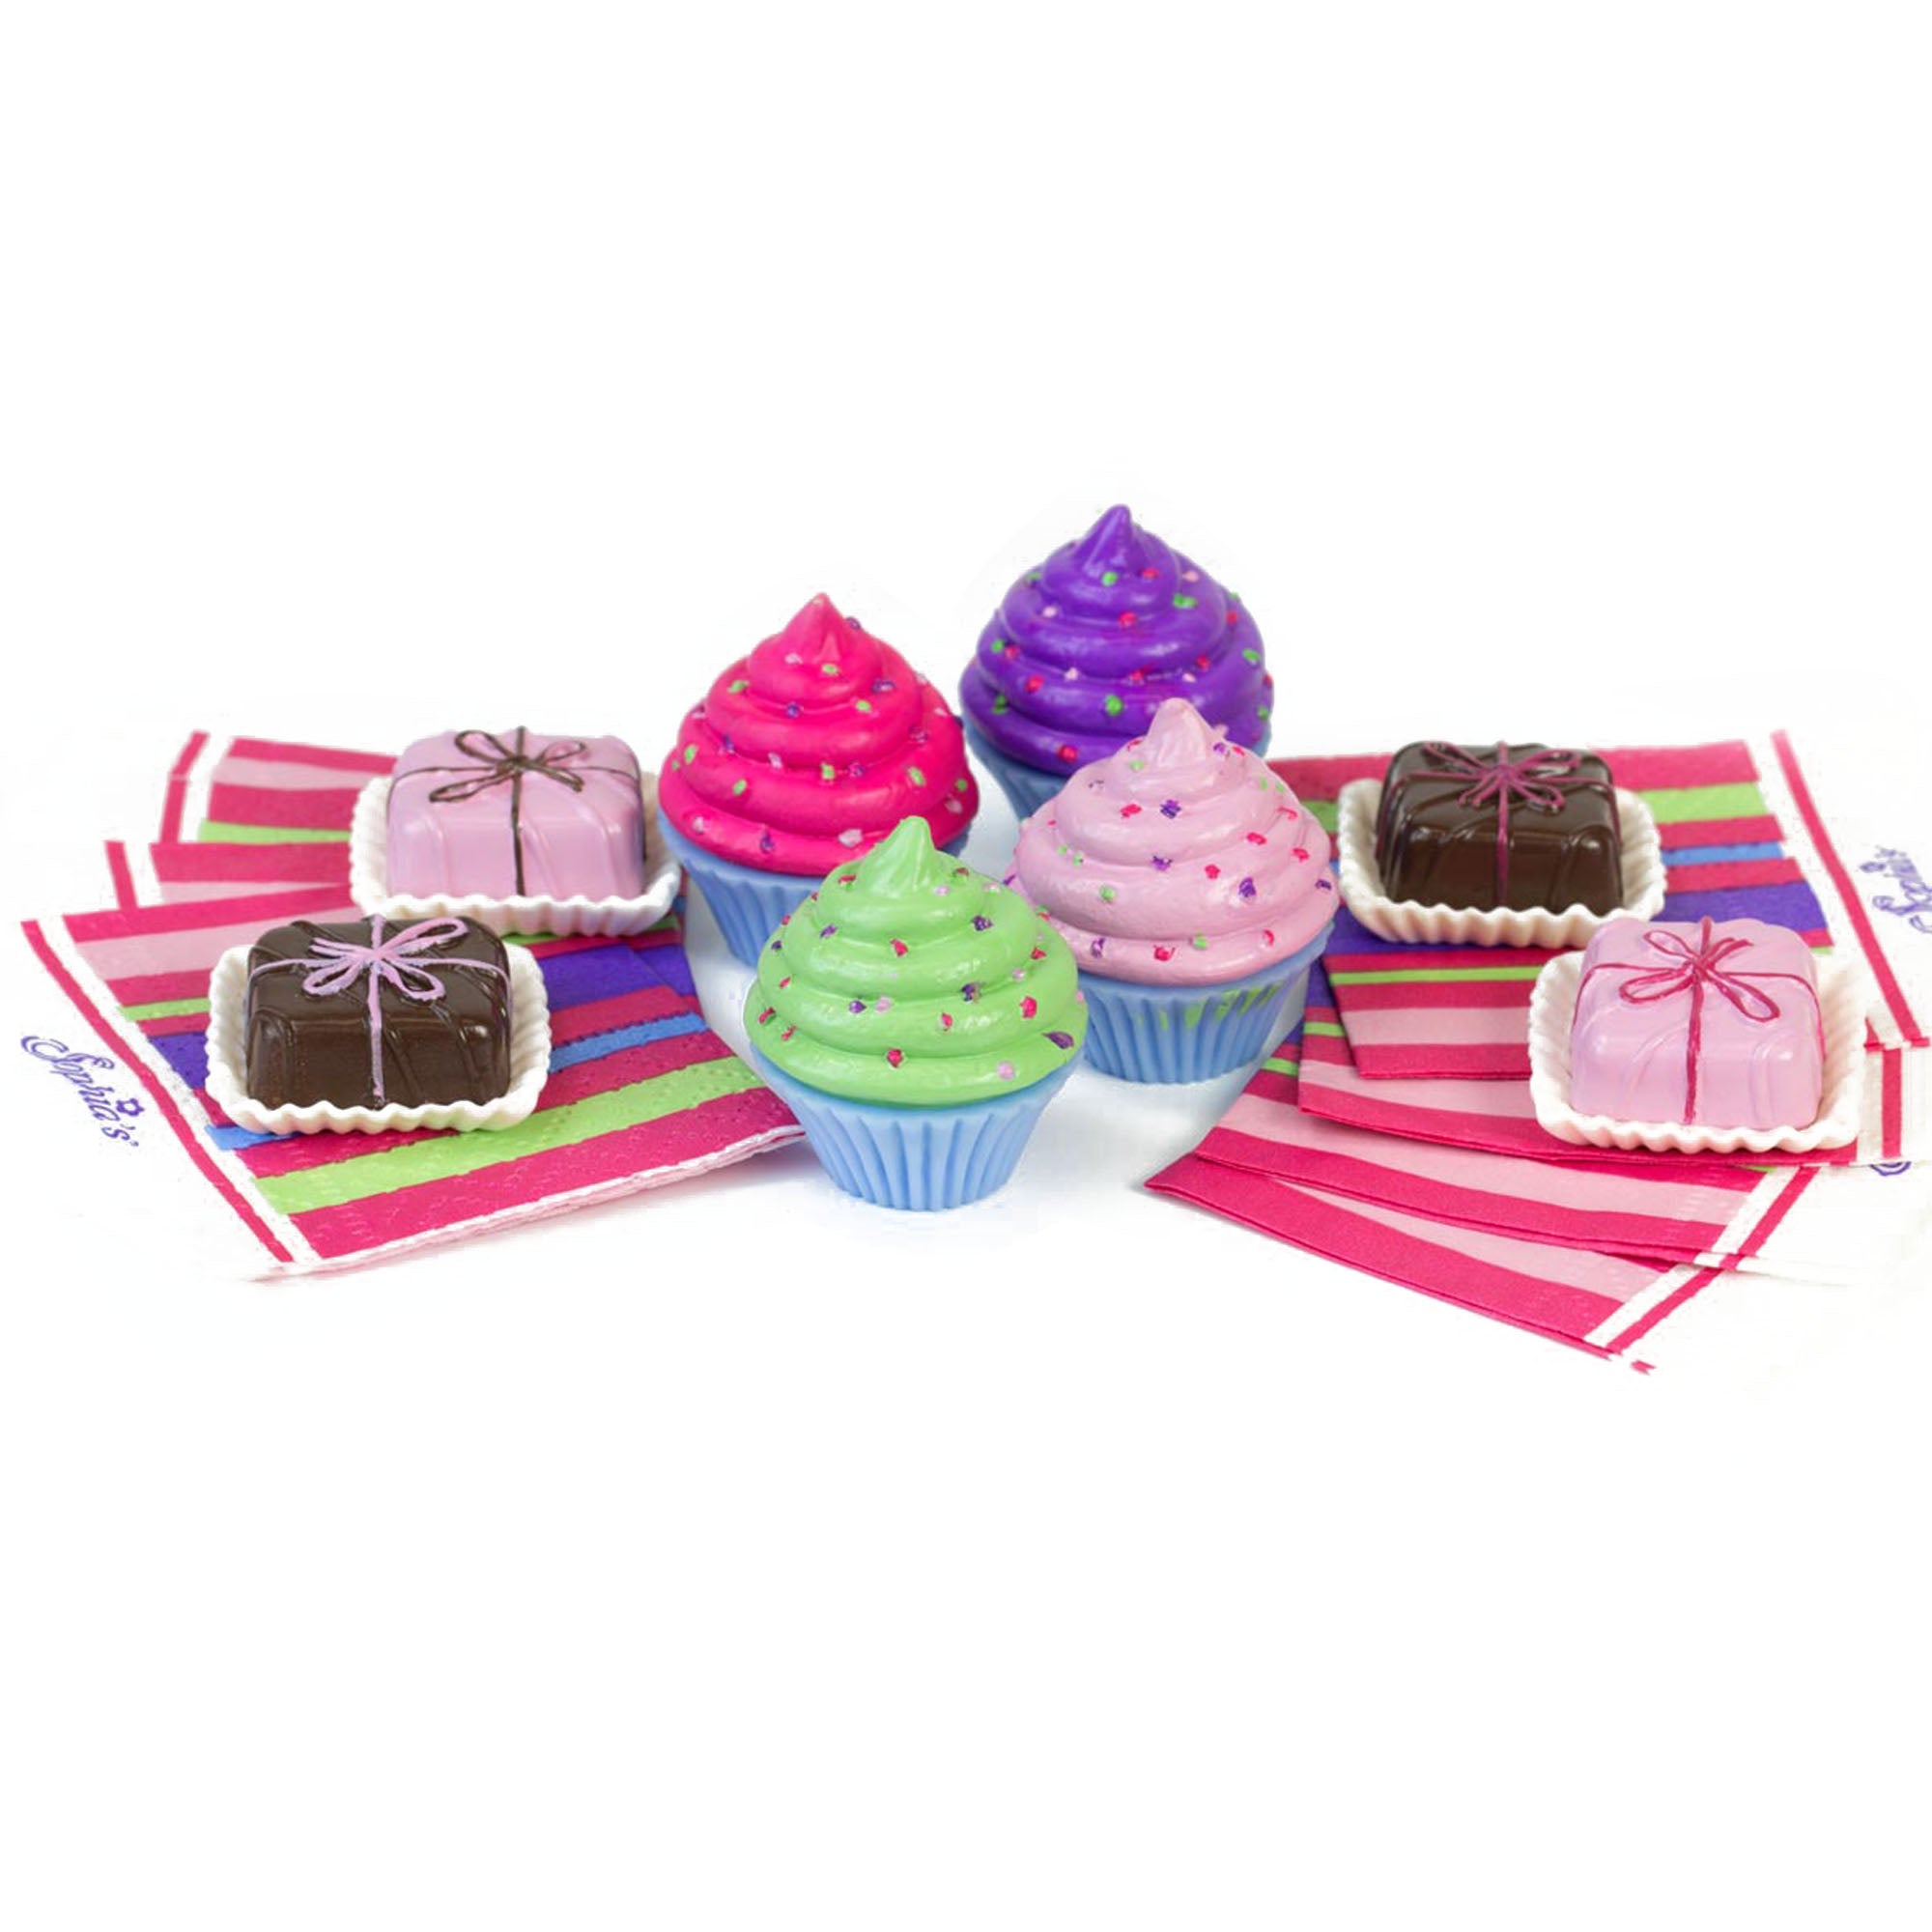 Sophia's - 18" Doll - Cupcake & Petit Four Set + Dessert Display Set - Pink